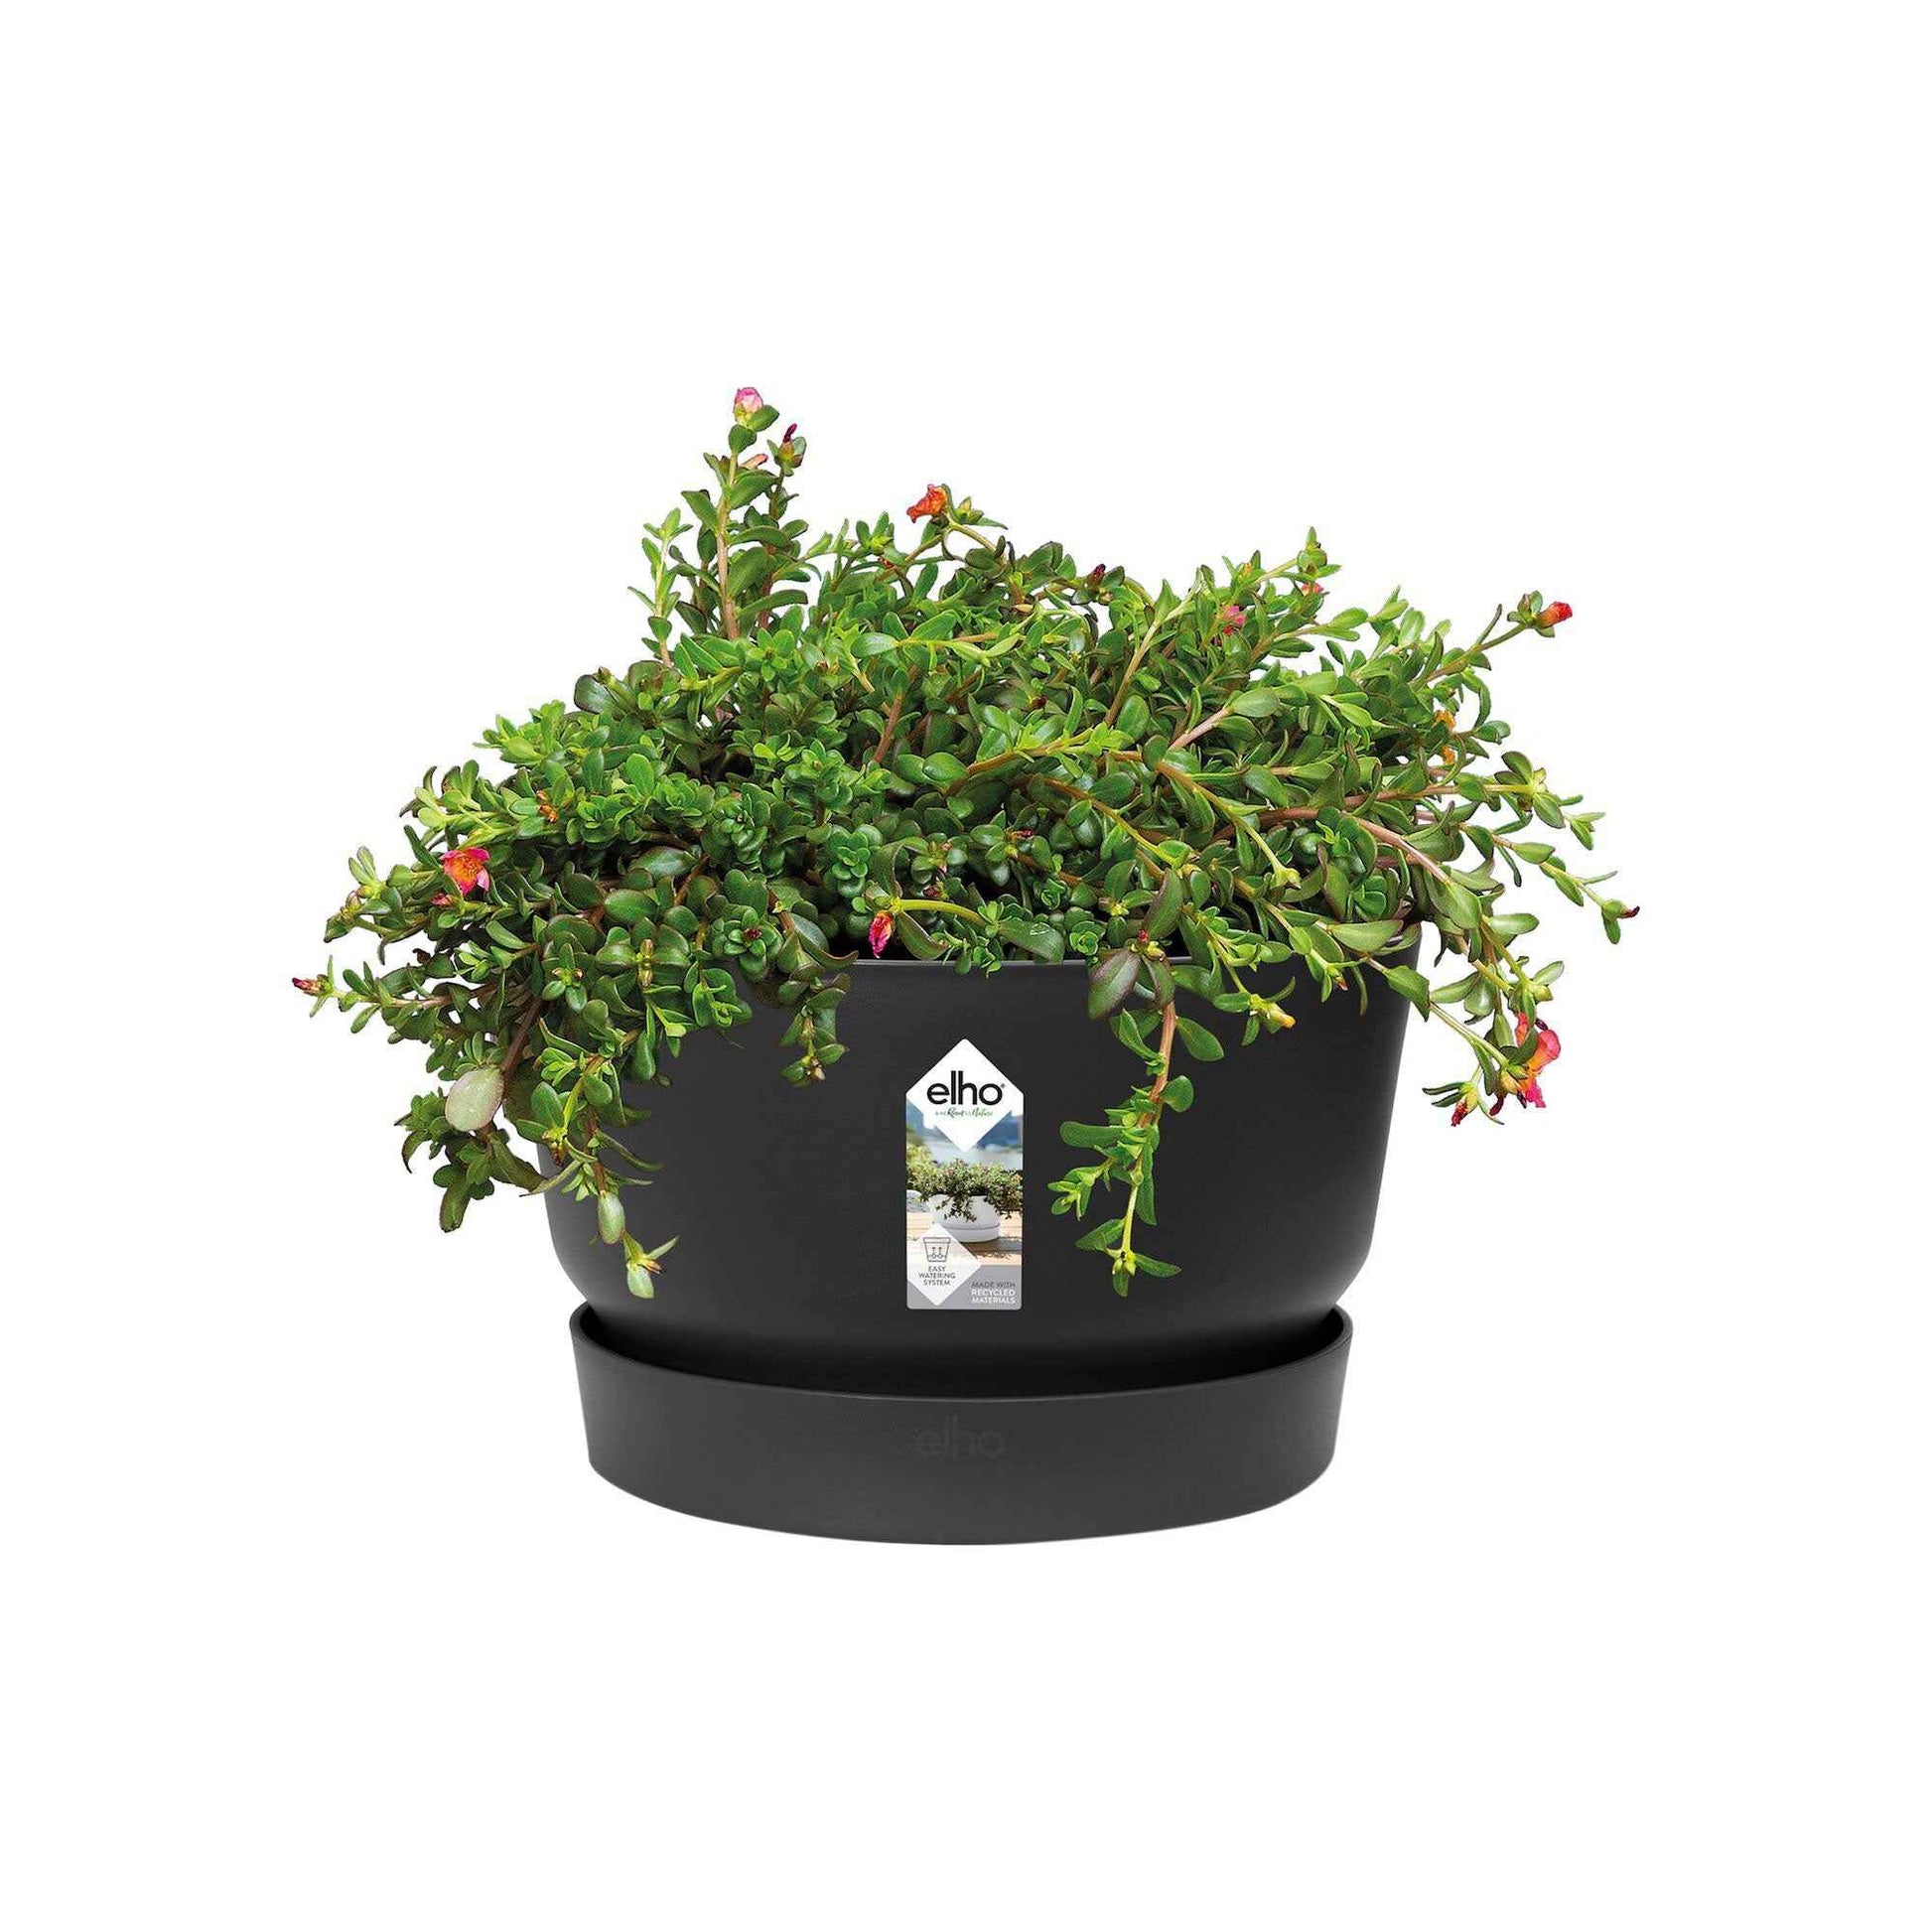 Elho Schale Greenville rund schwarz - Außentopf - Blumentopf Modelle